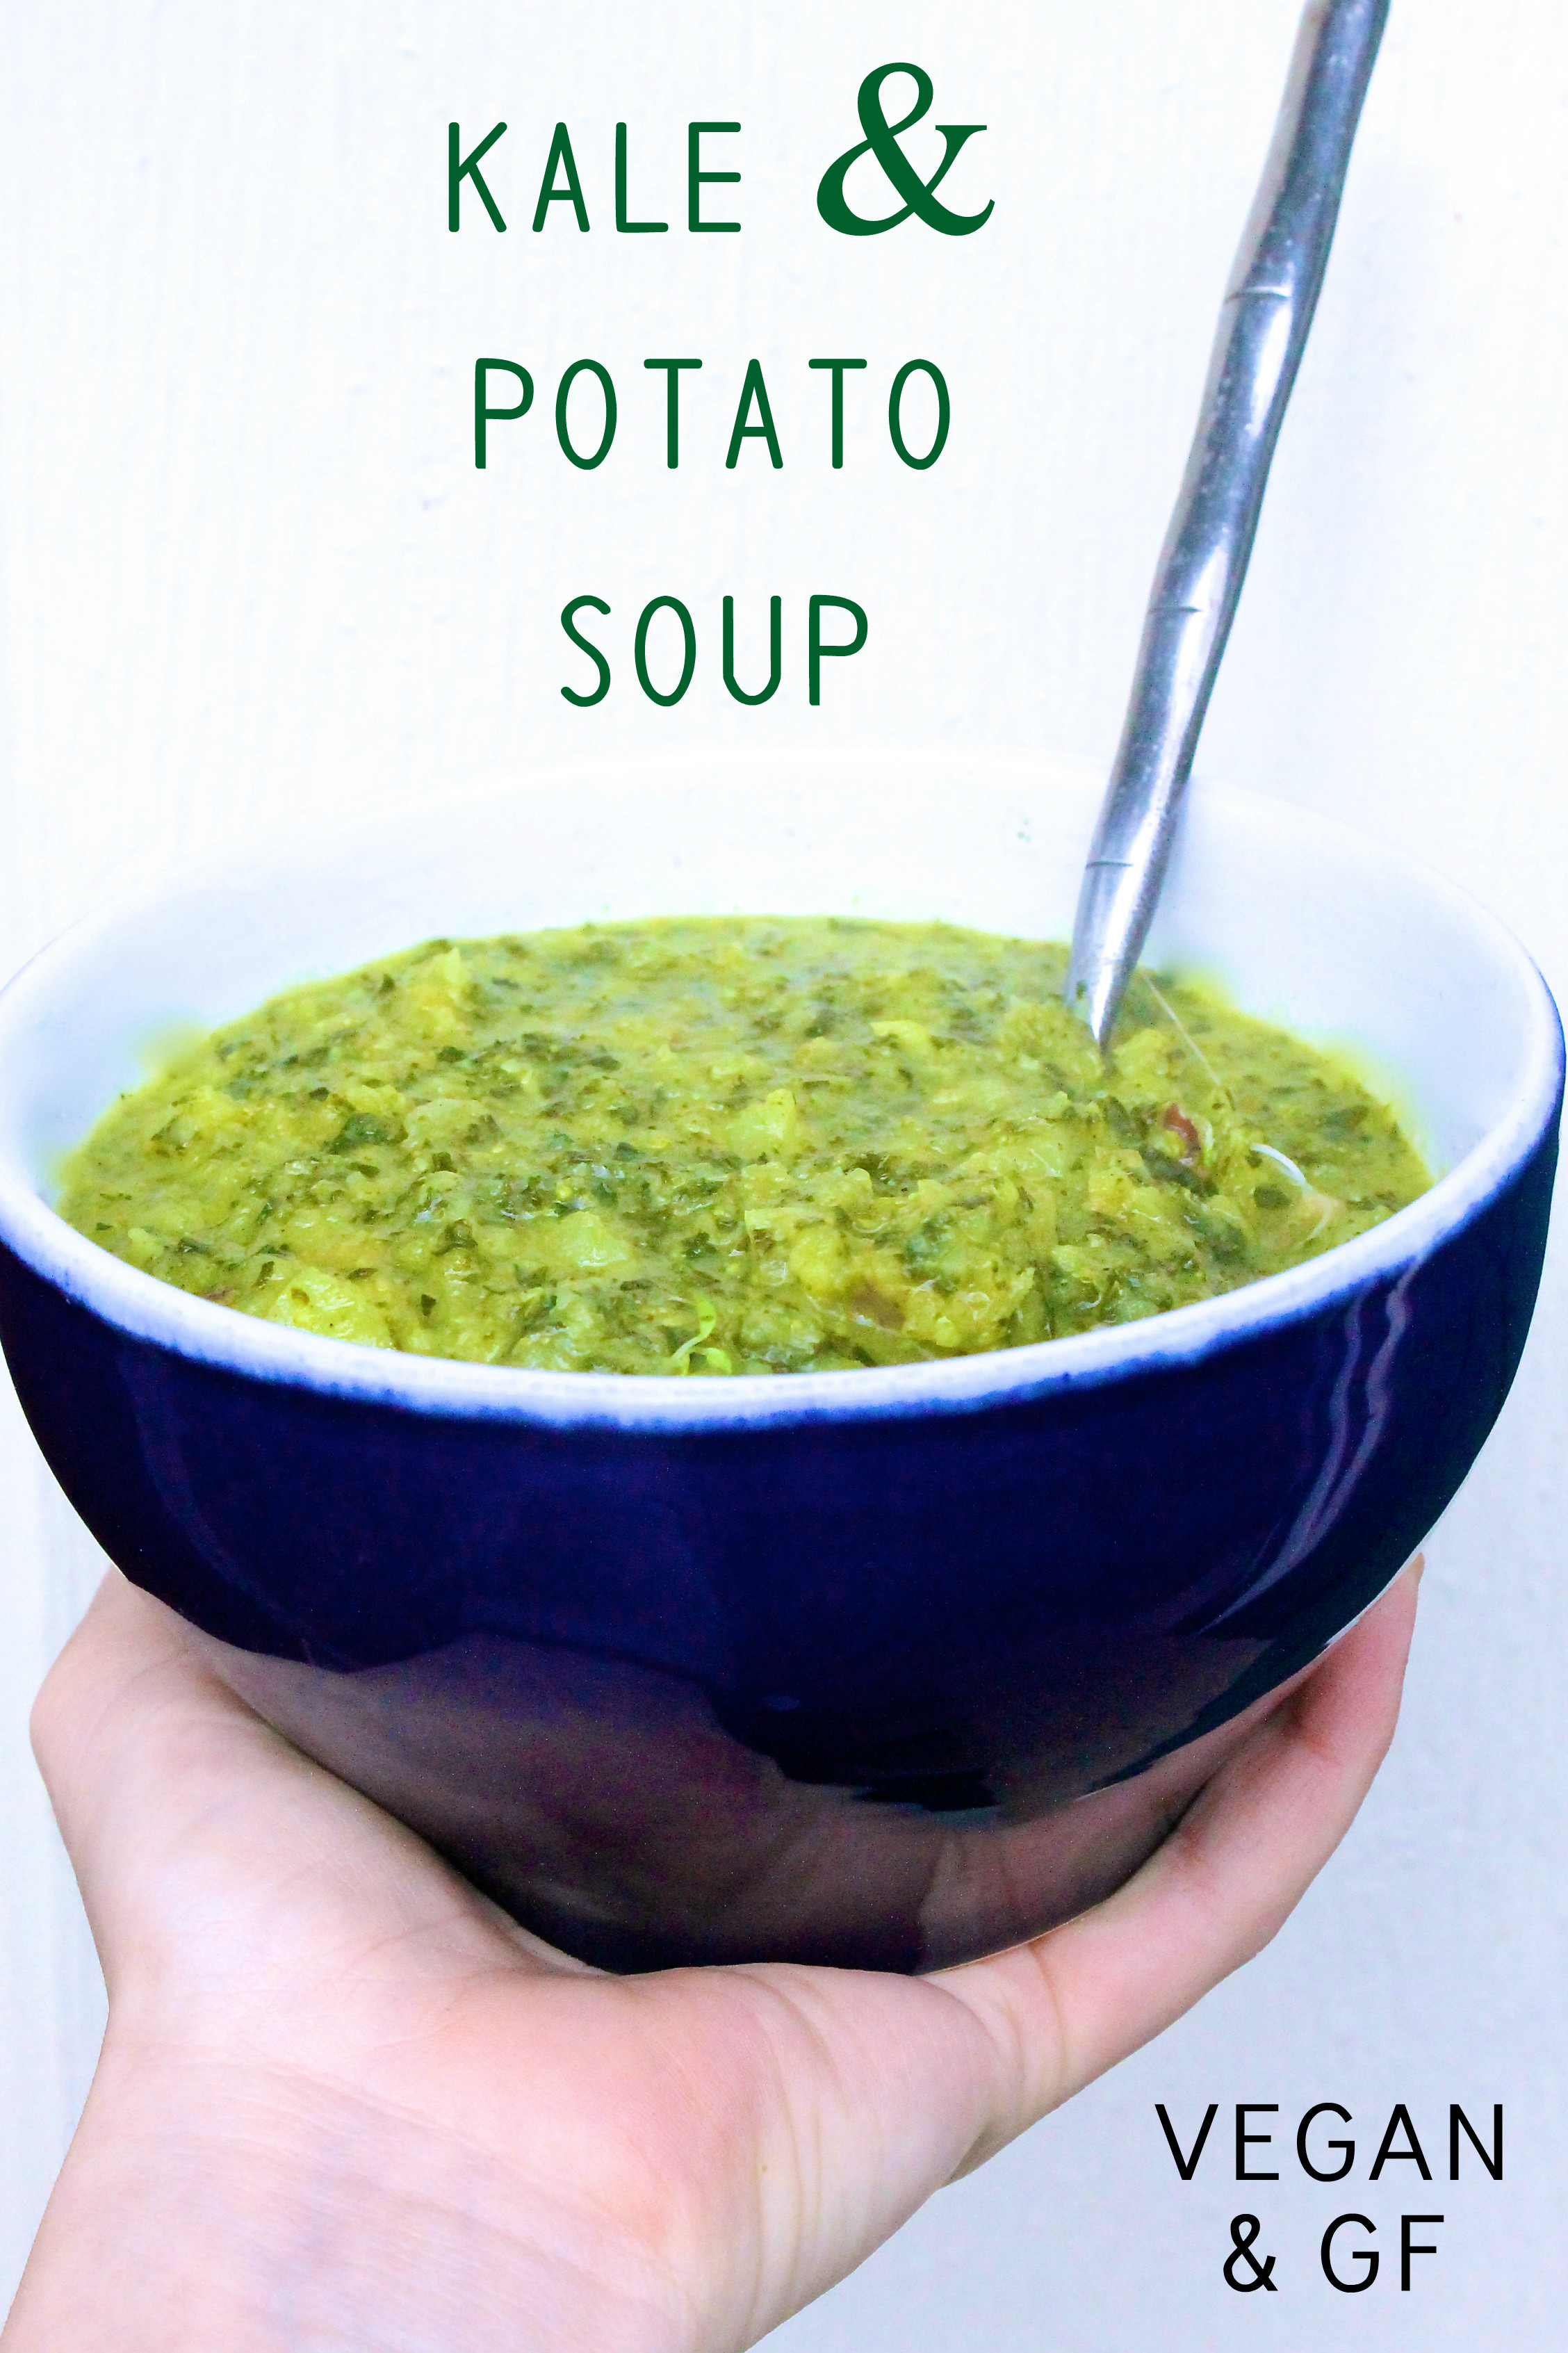 Kale & Potato Soup